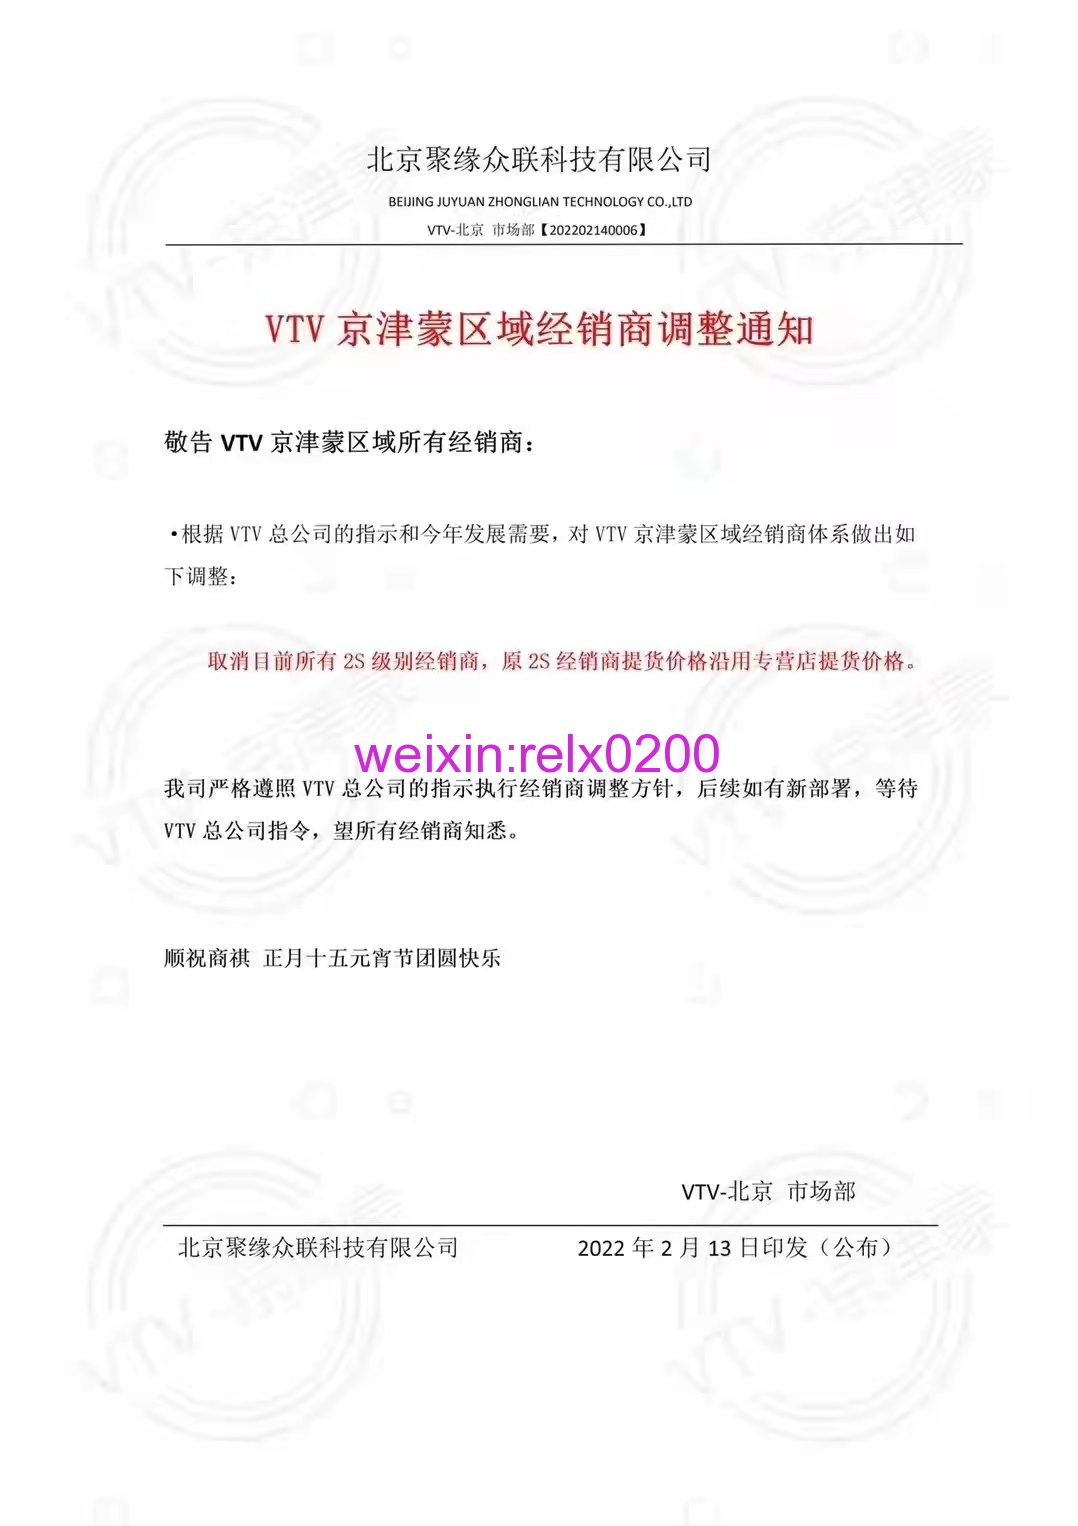 VTV宣布取消京津蒙区域所有2S级别经销商